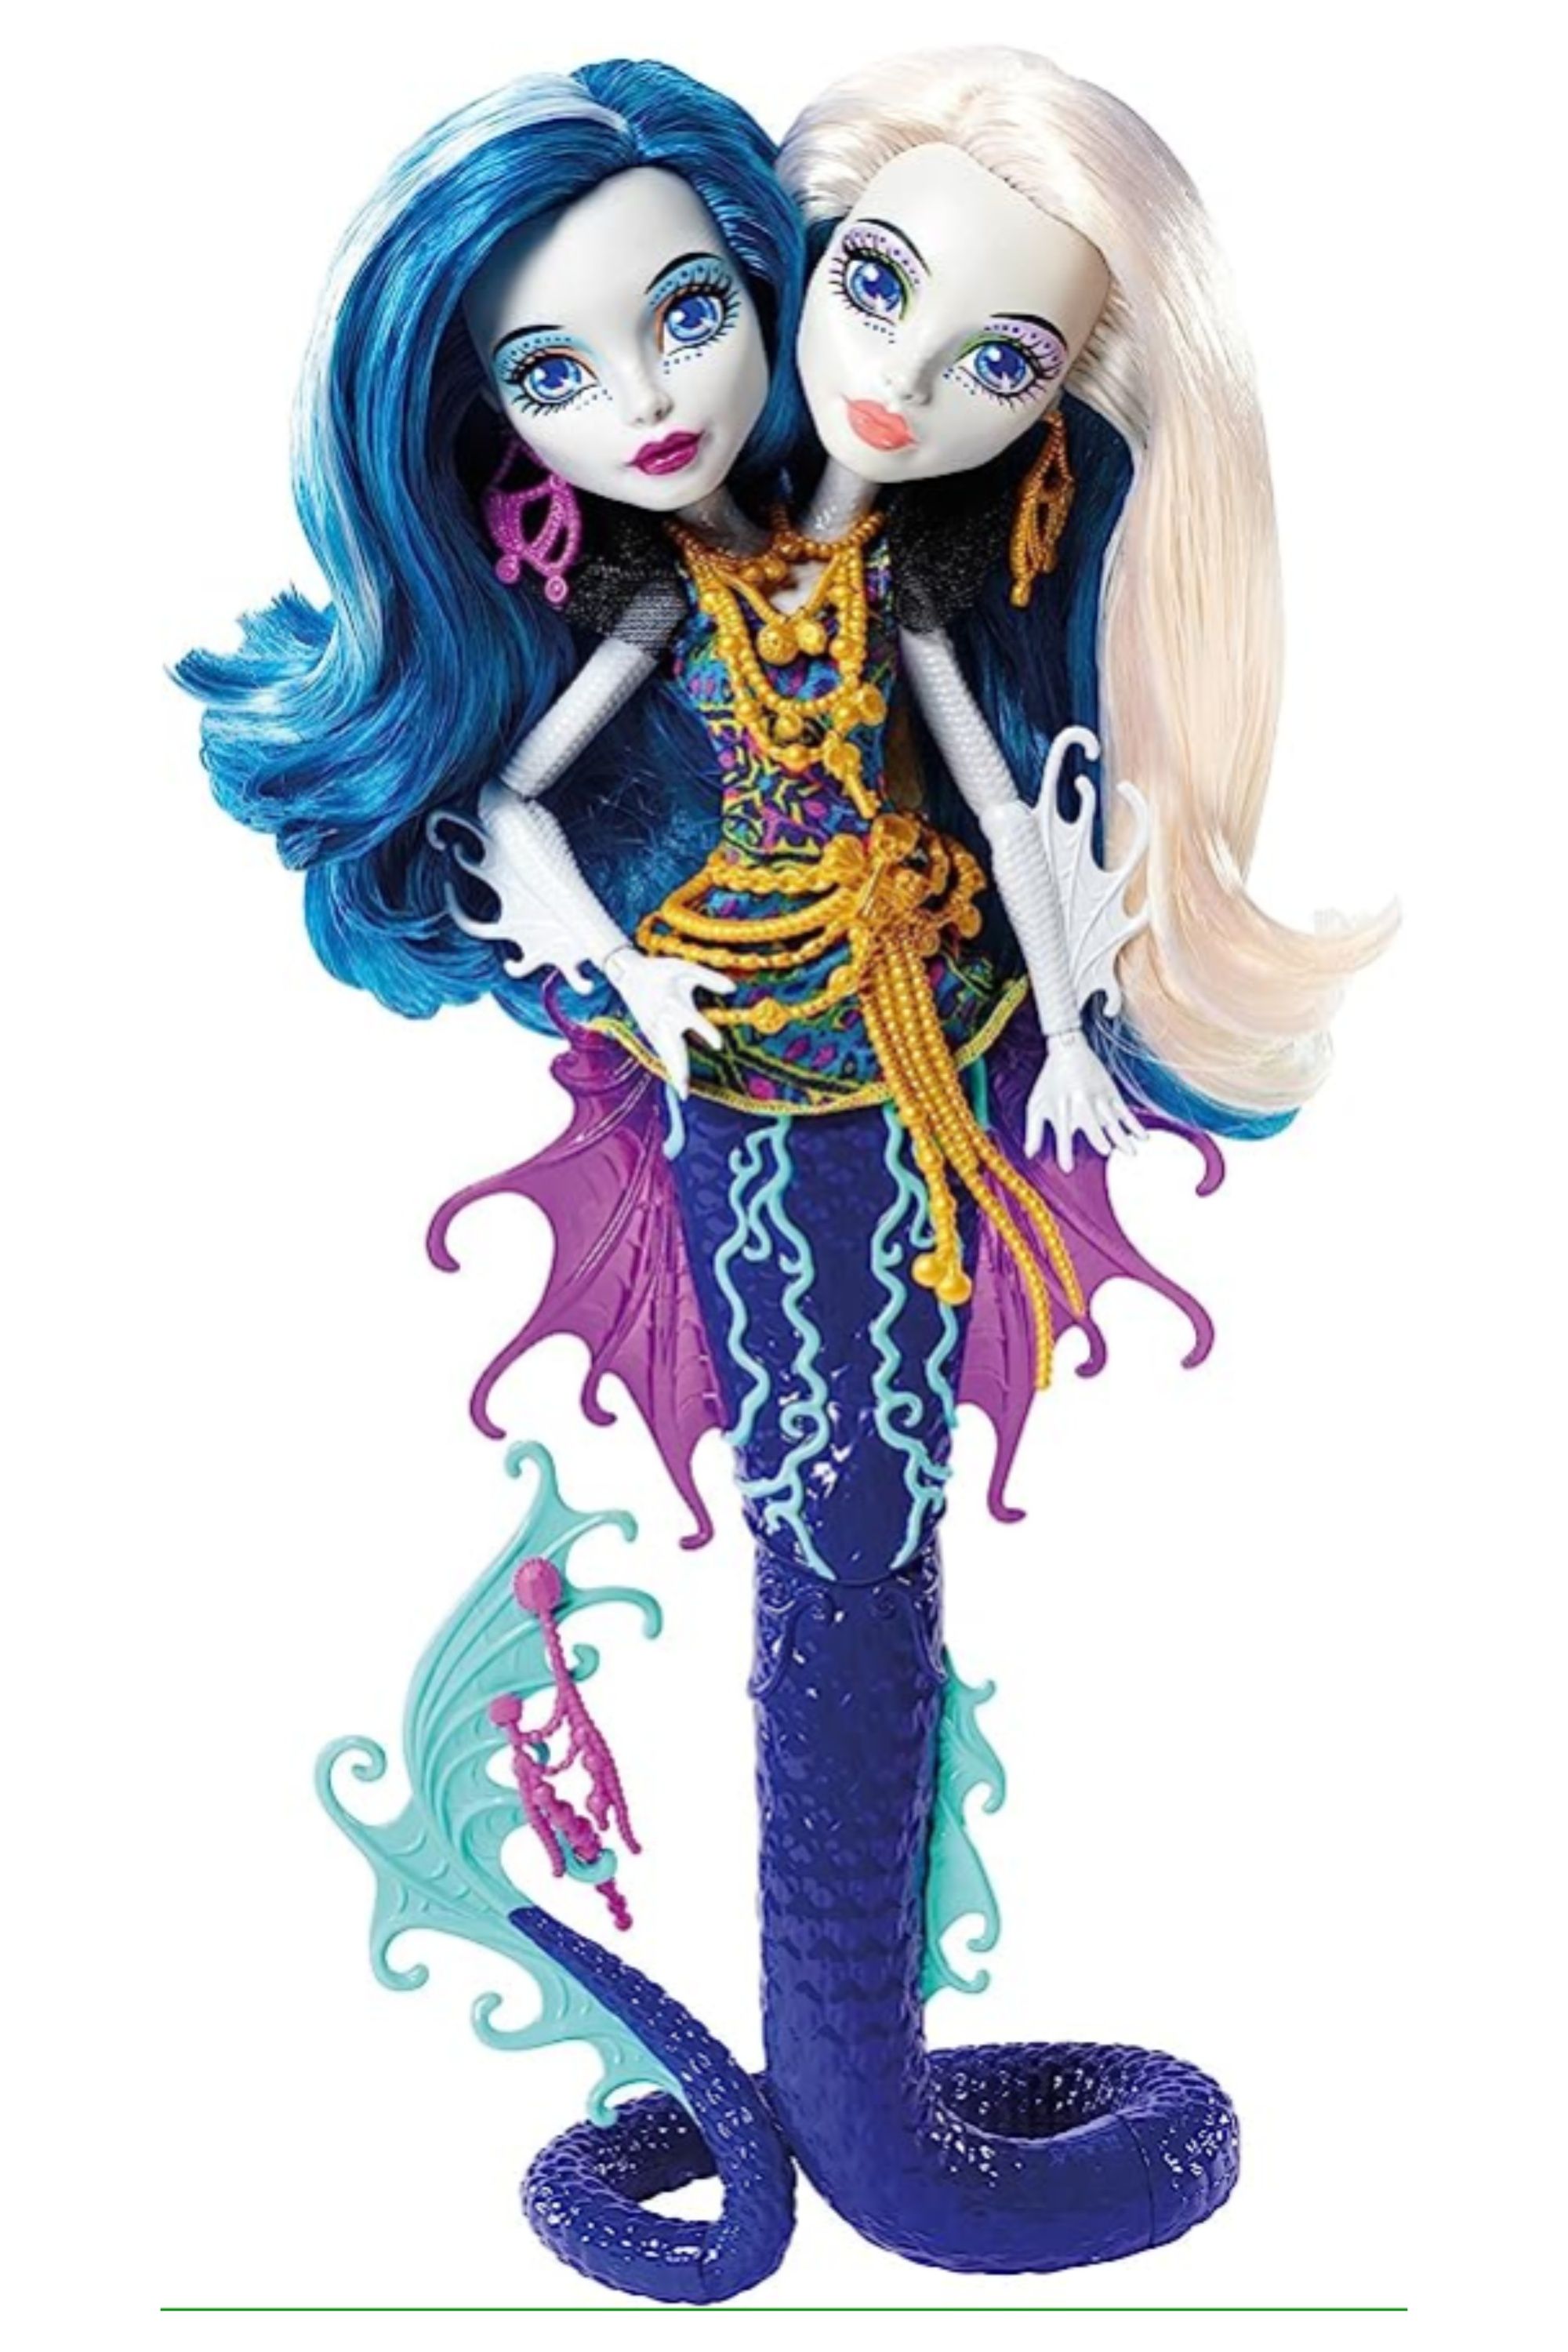 Monster High Great Scarrier Reef Peri & Pearl Serpintine Doll